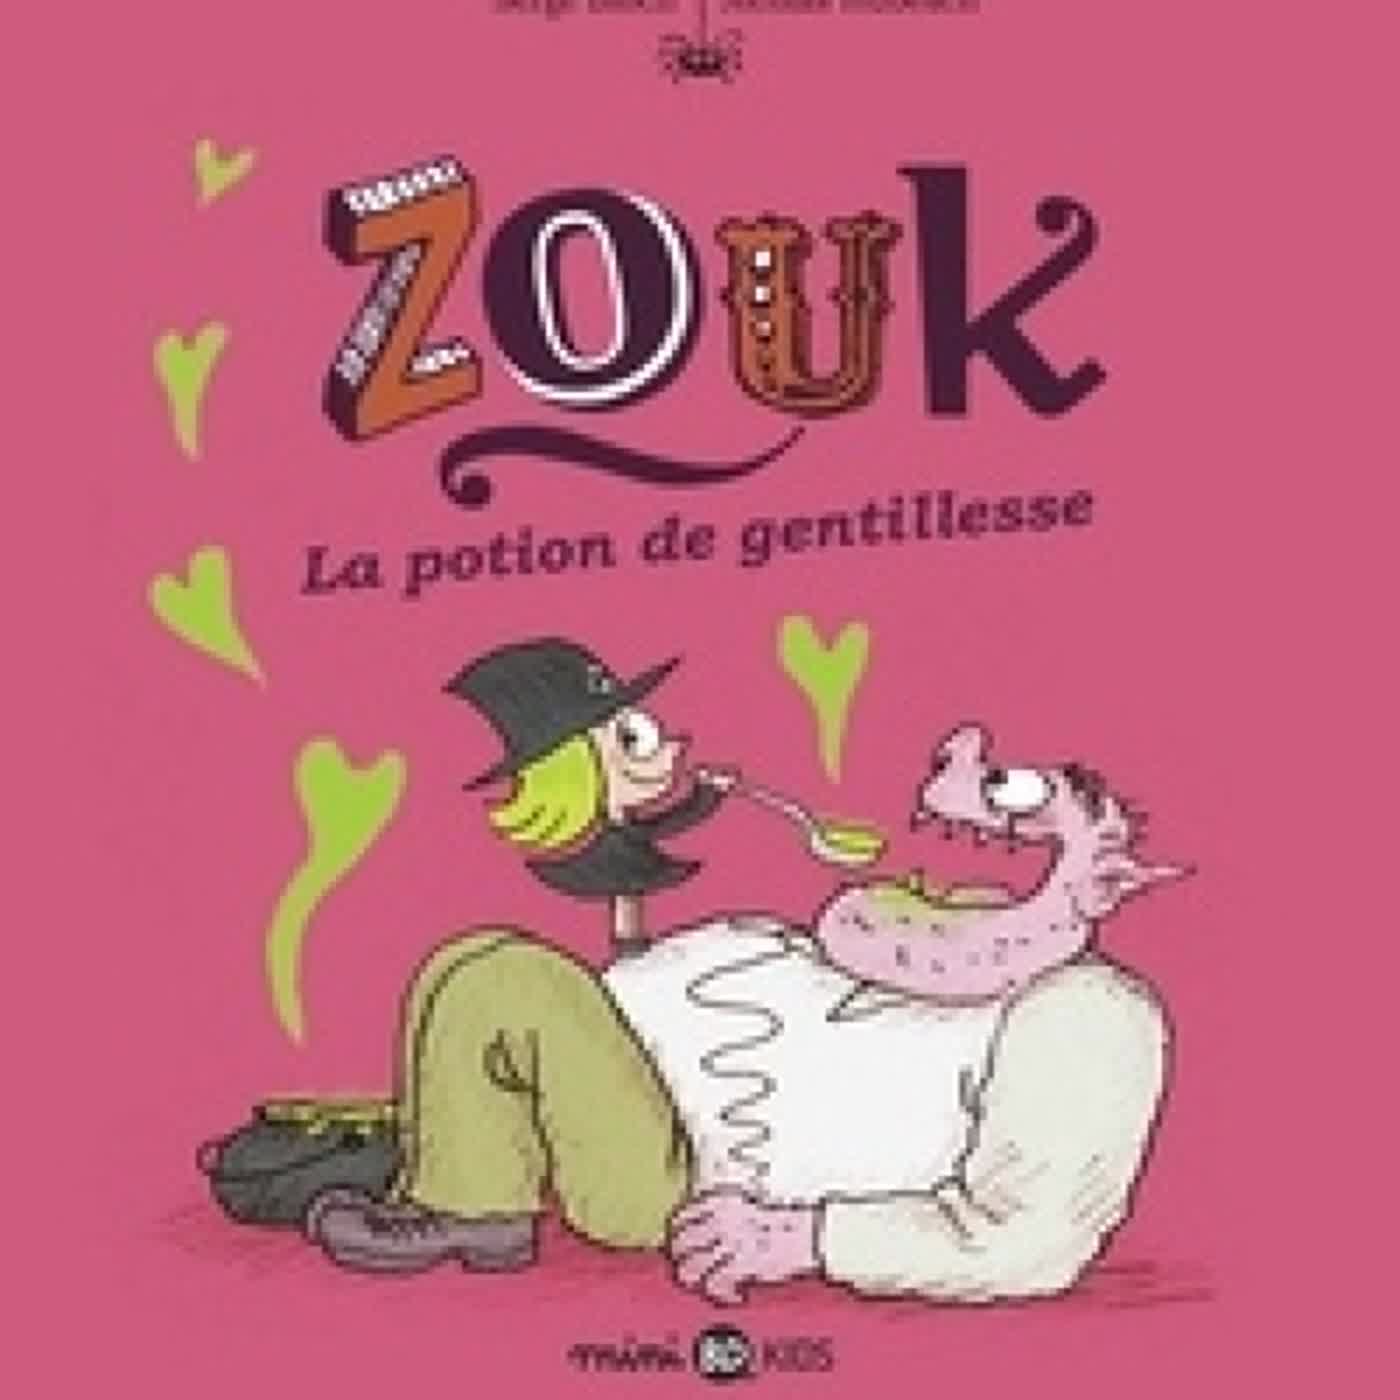 [PDF] Zouk, Tome 19  - Zouk 19 La potion de gentillesse by Serge Bloch